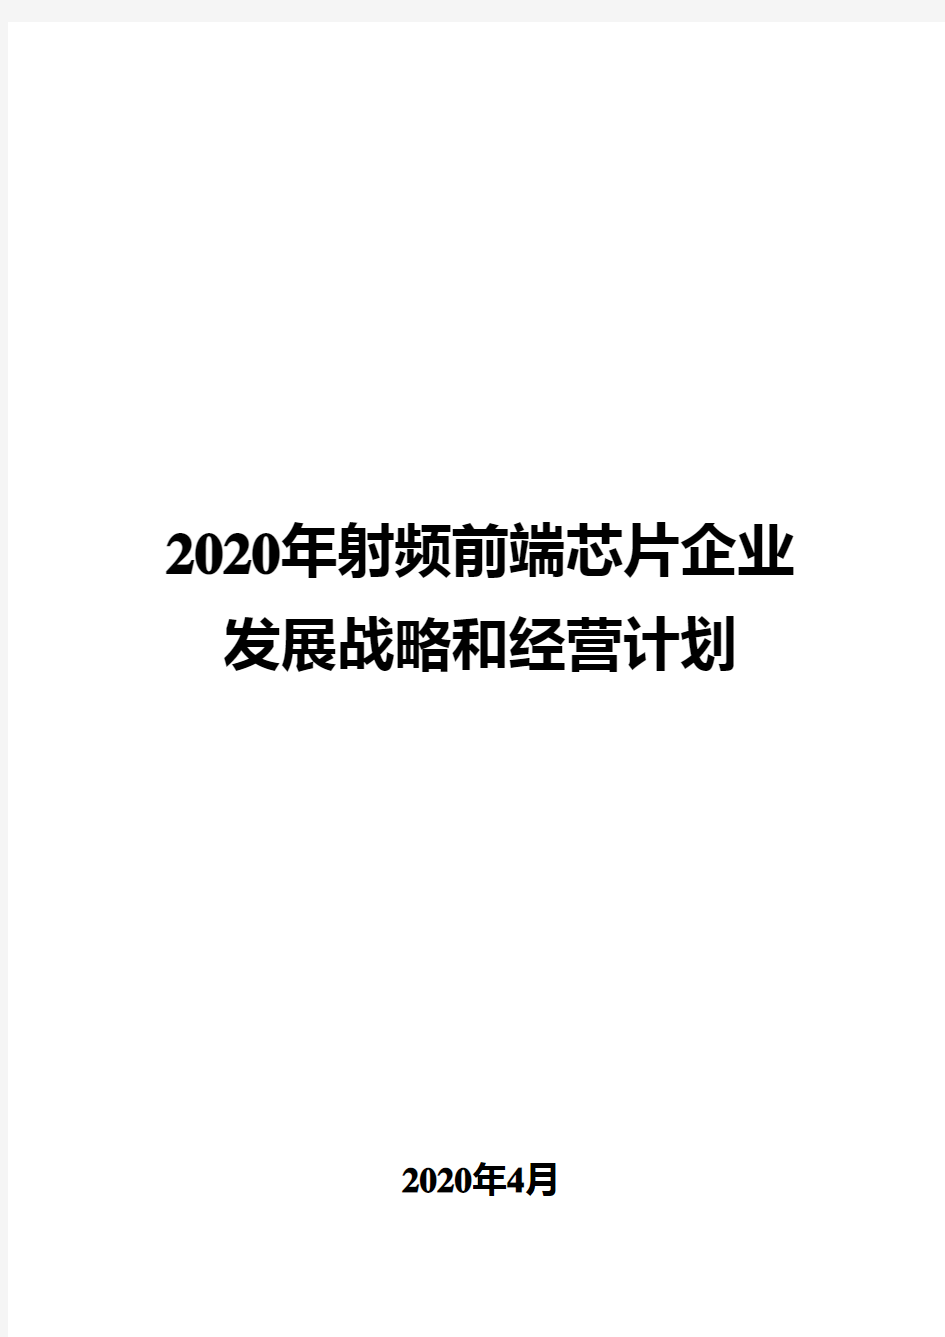 2020年射频前端芯片企业发展战略和经营计划